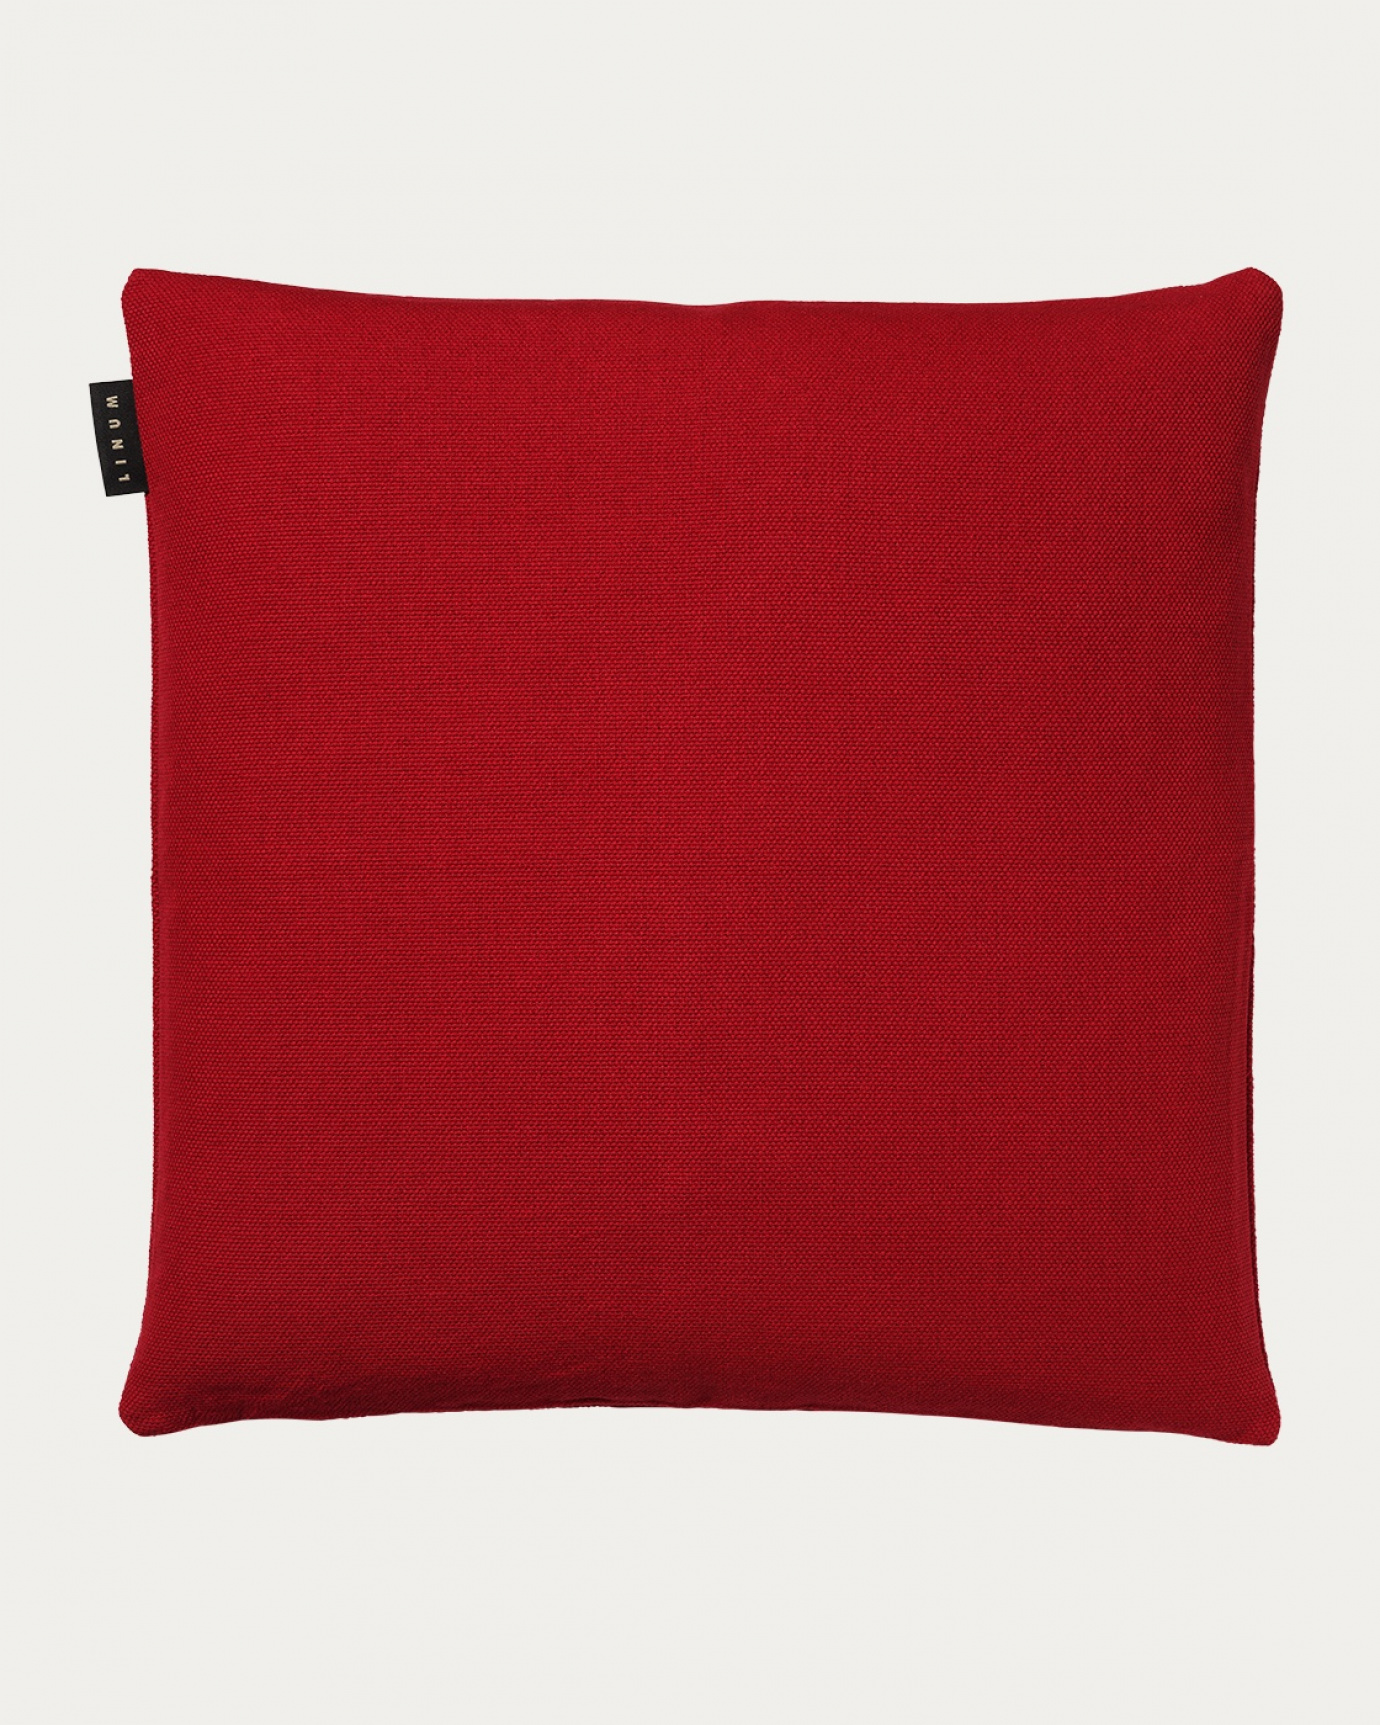 Immagine prodotto rosso PEPPER copricuscini in morbido cotone di LINUM DESIGN. Facile da lavare e resistente per generazioni. Dimensioni 60x60 cm.